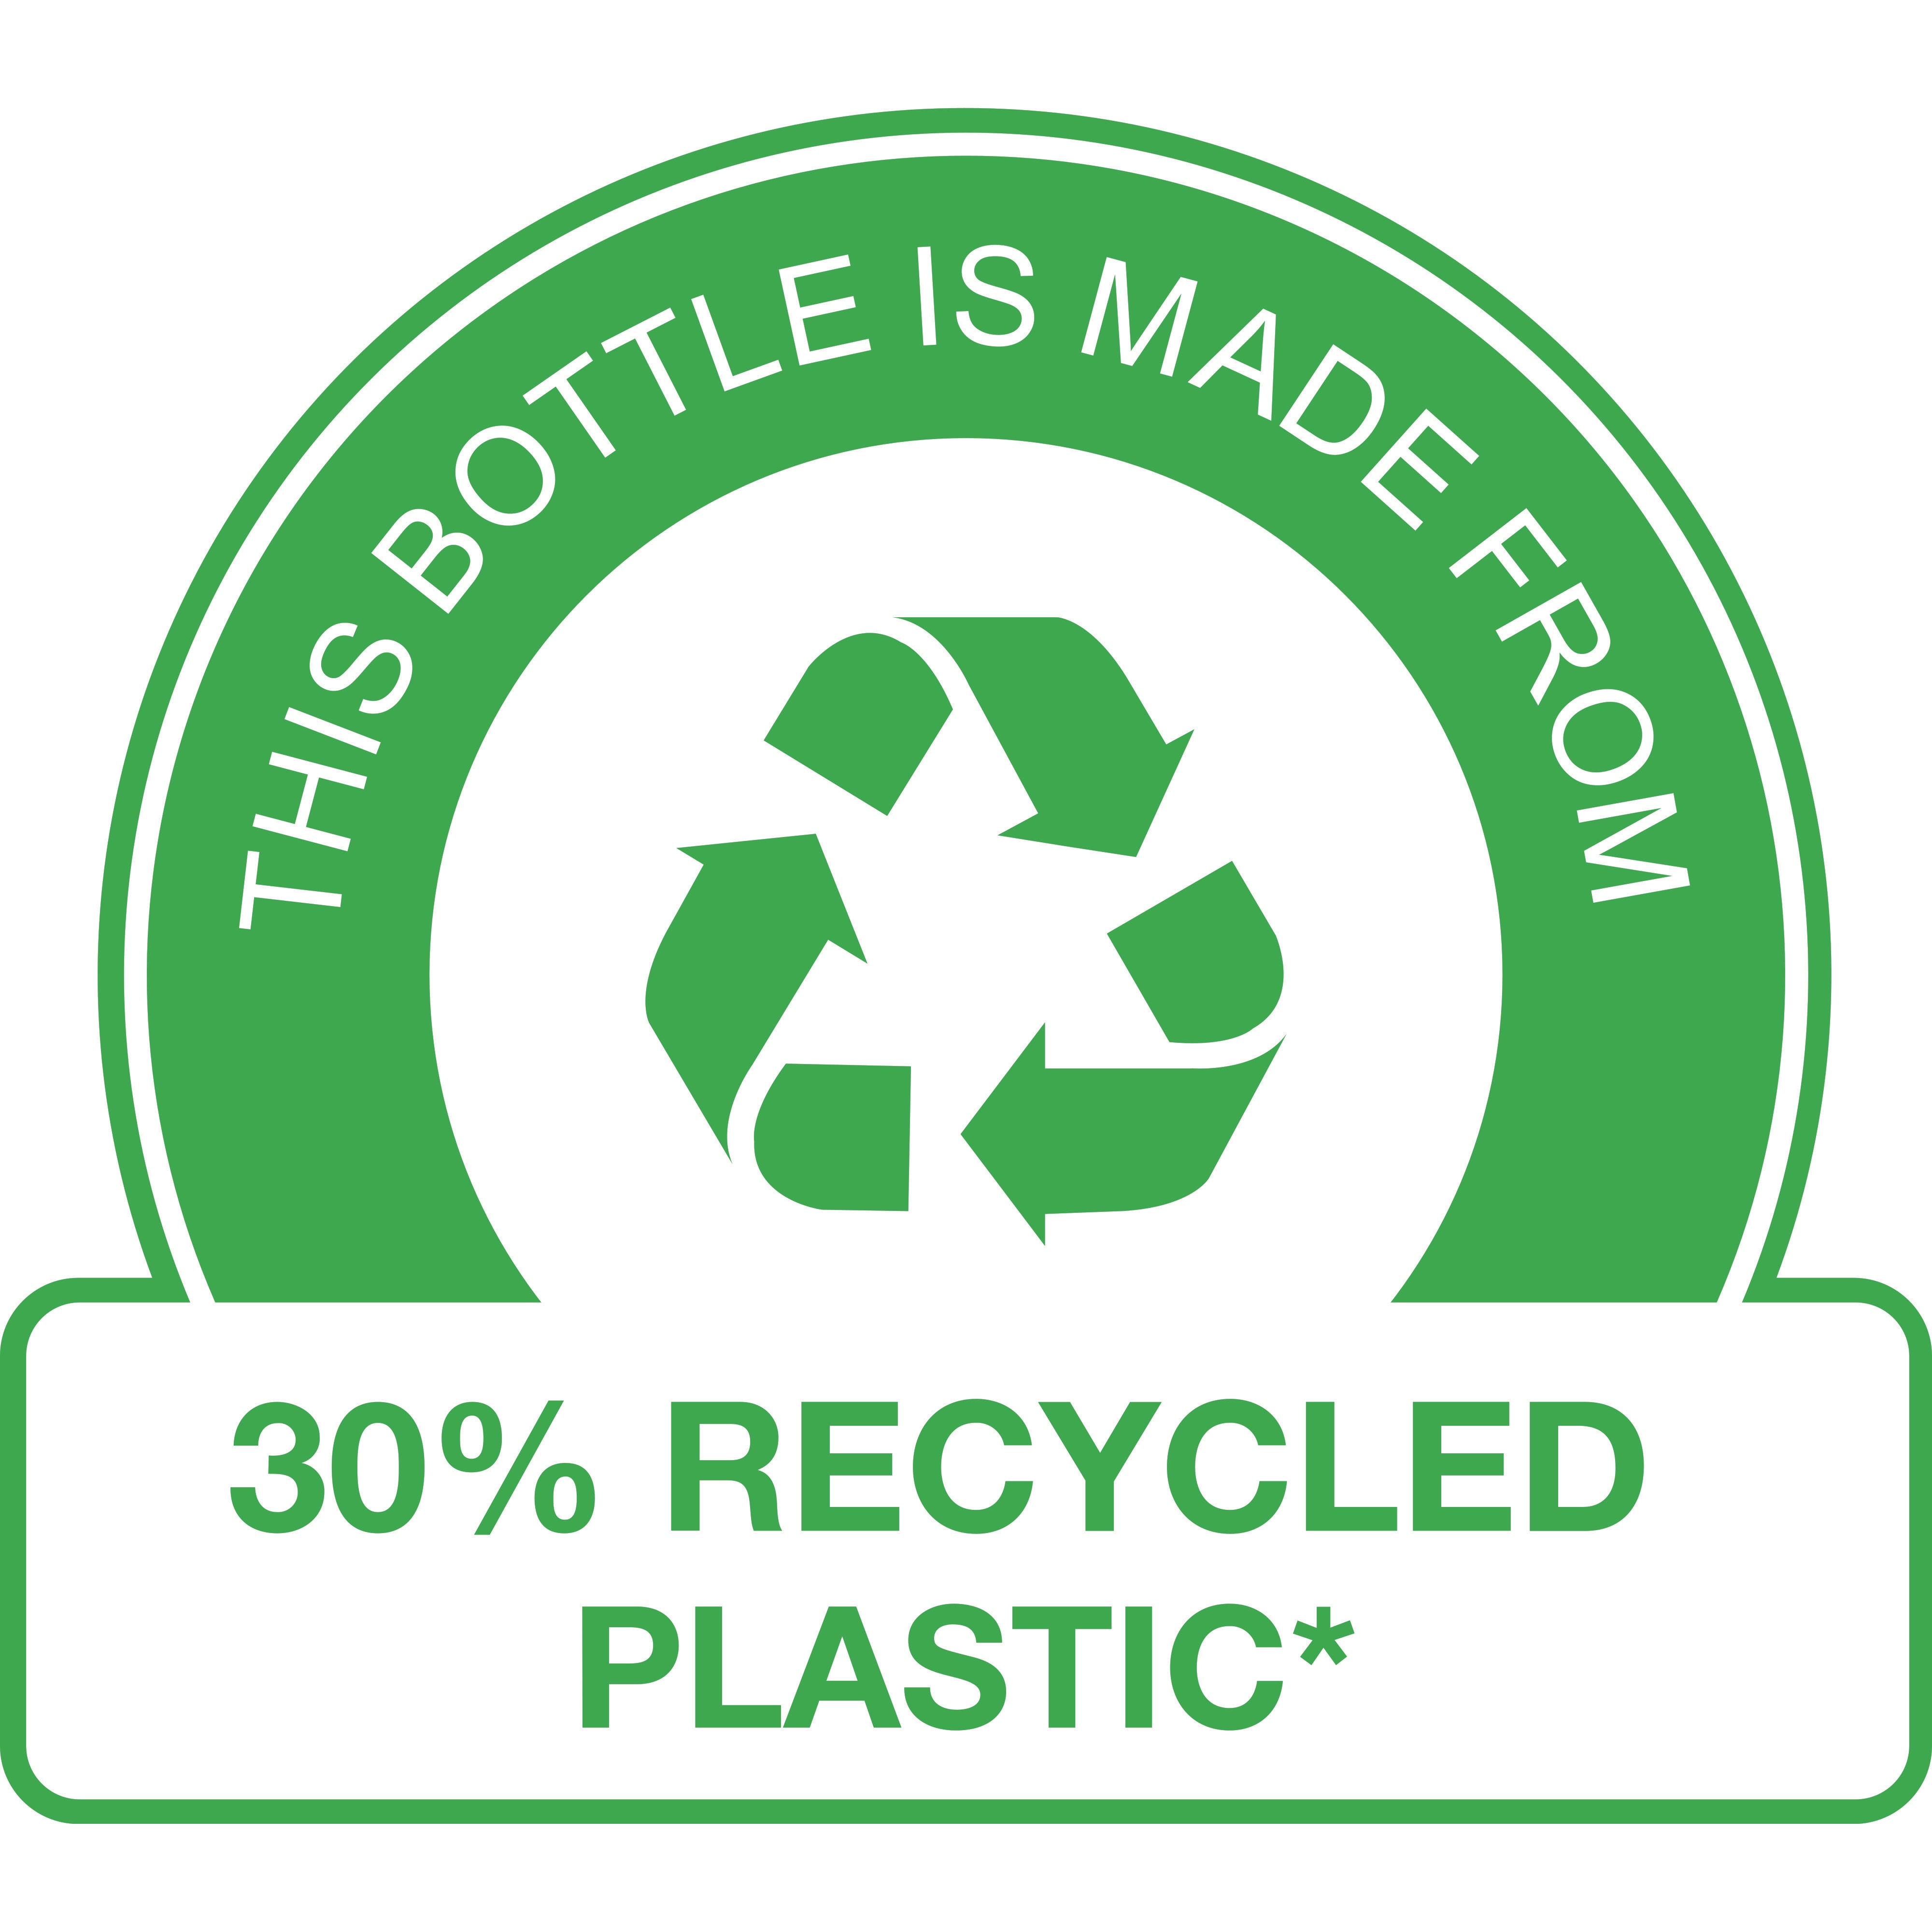 Táto fľaša je vyrobená z 30 % z recyklovaného plastu*

 (* okrem pumpičky).